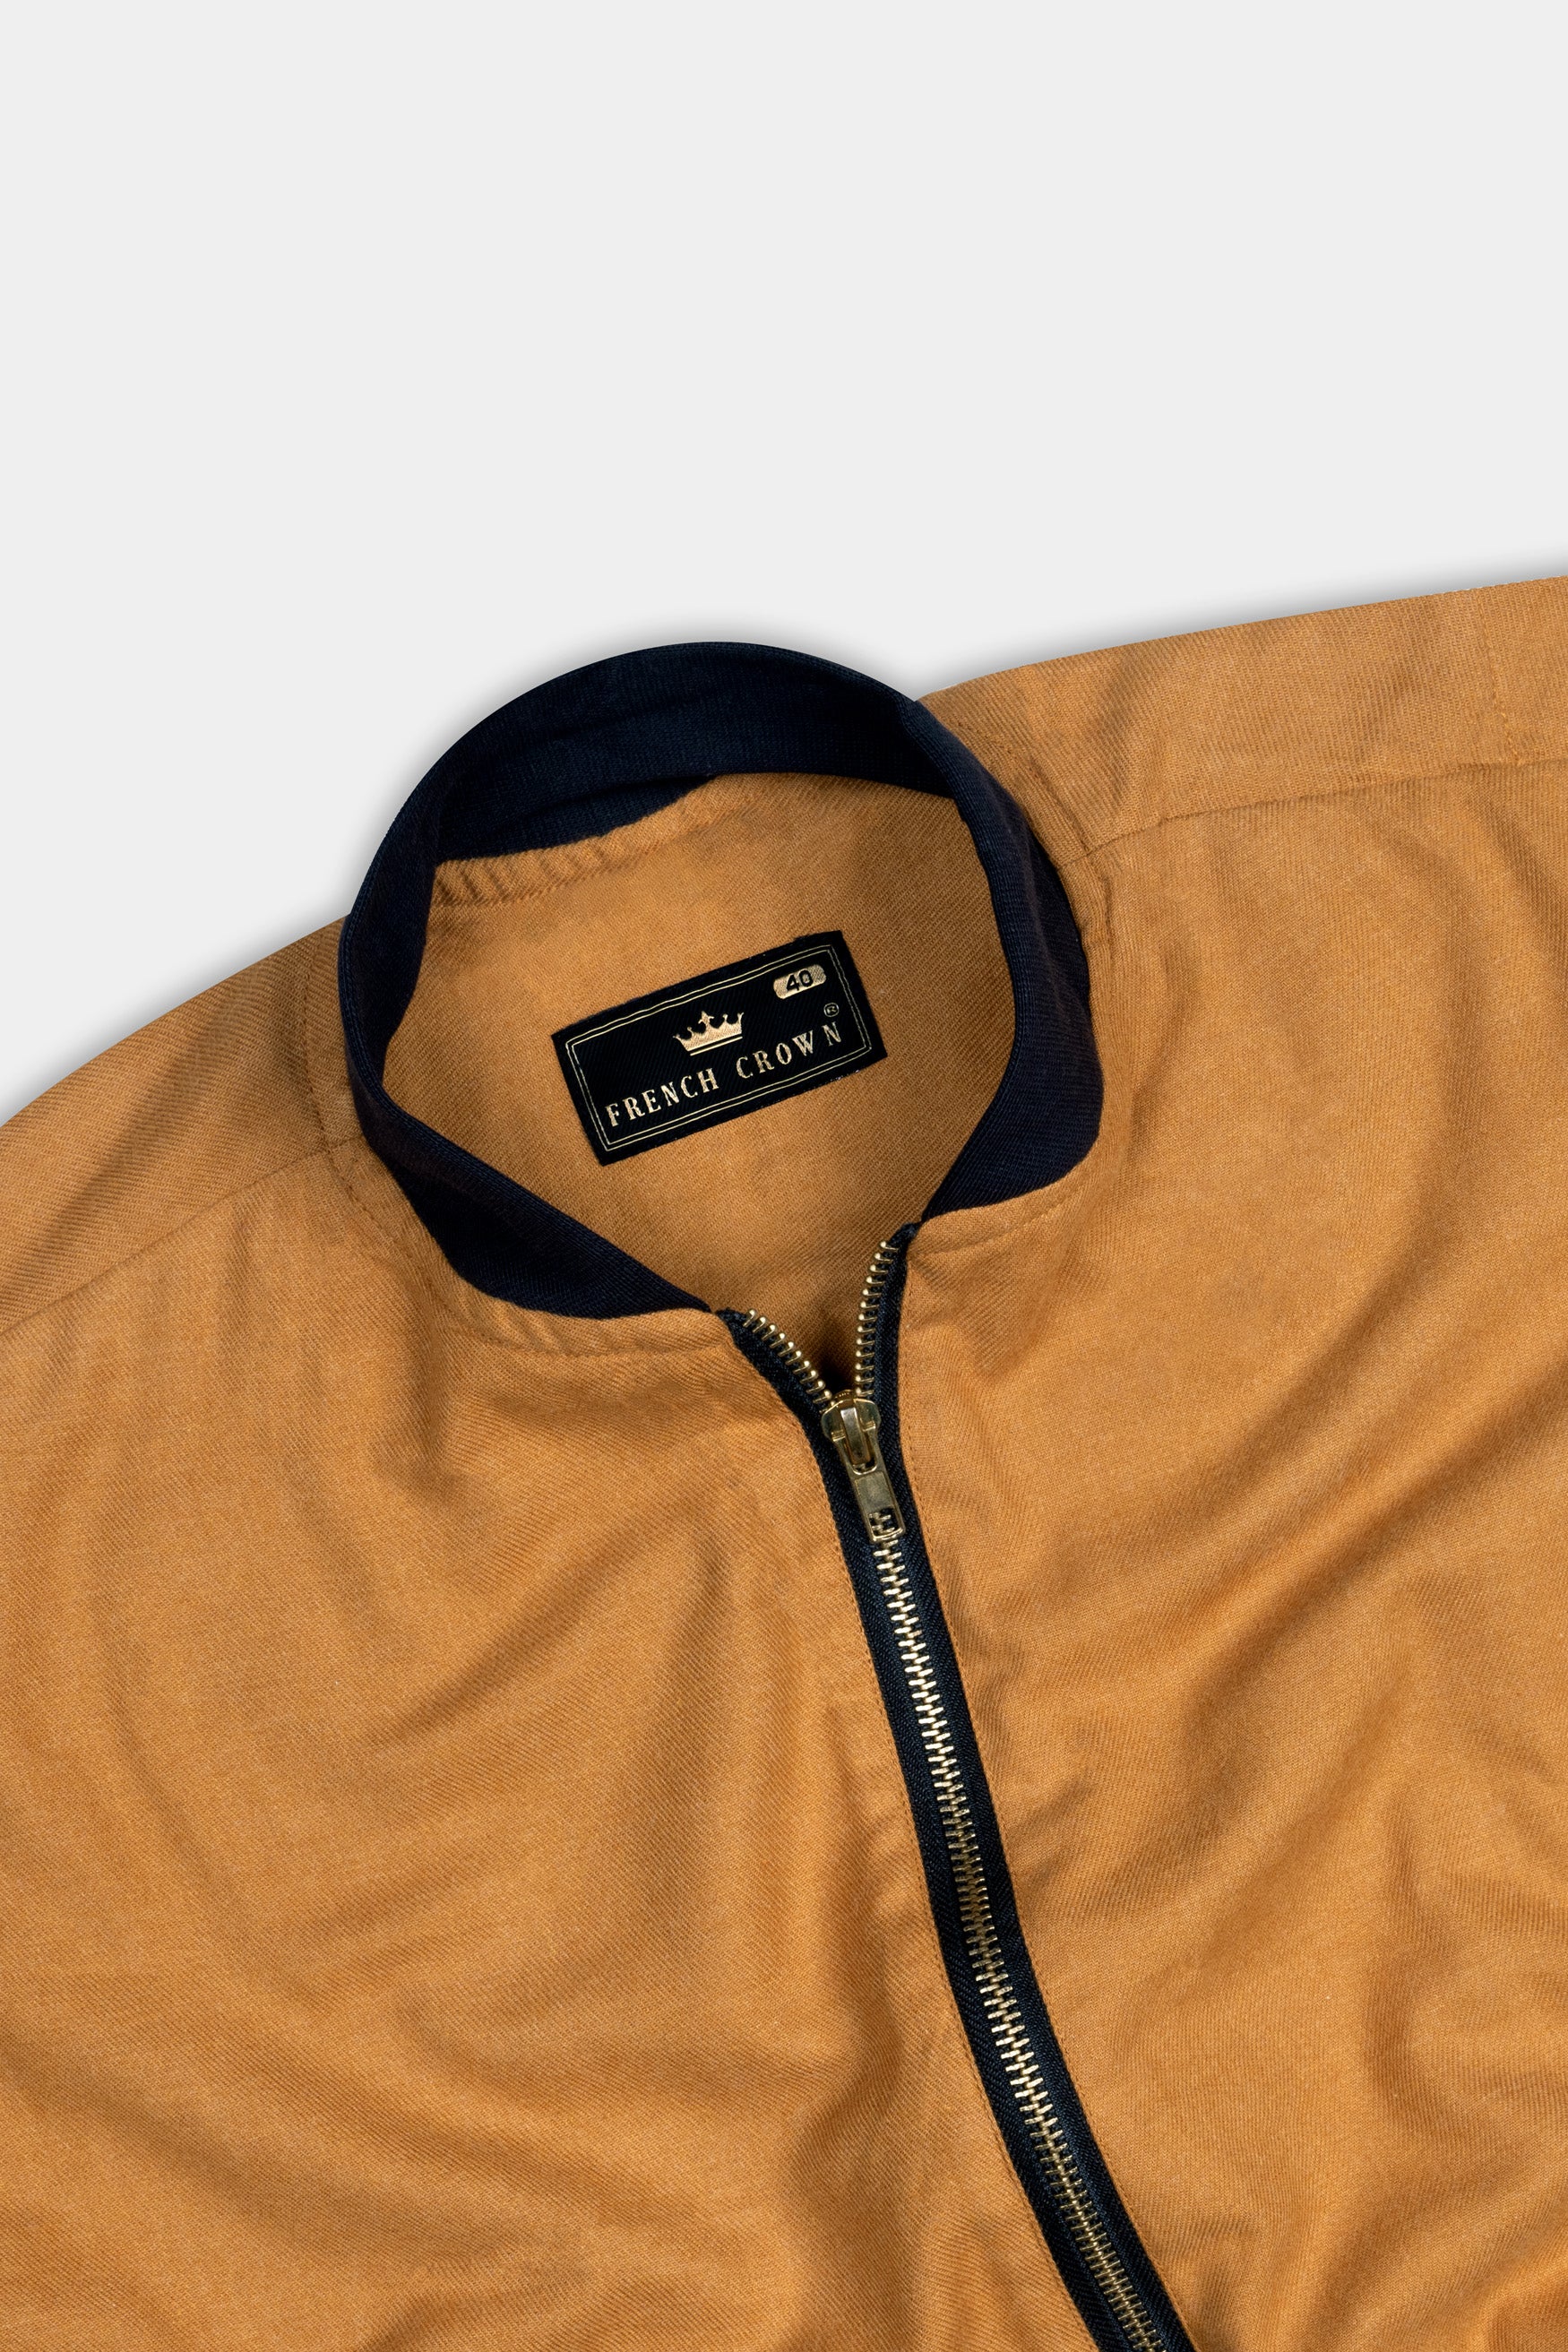 Sienna Orange Flannel Bomber Jacket